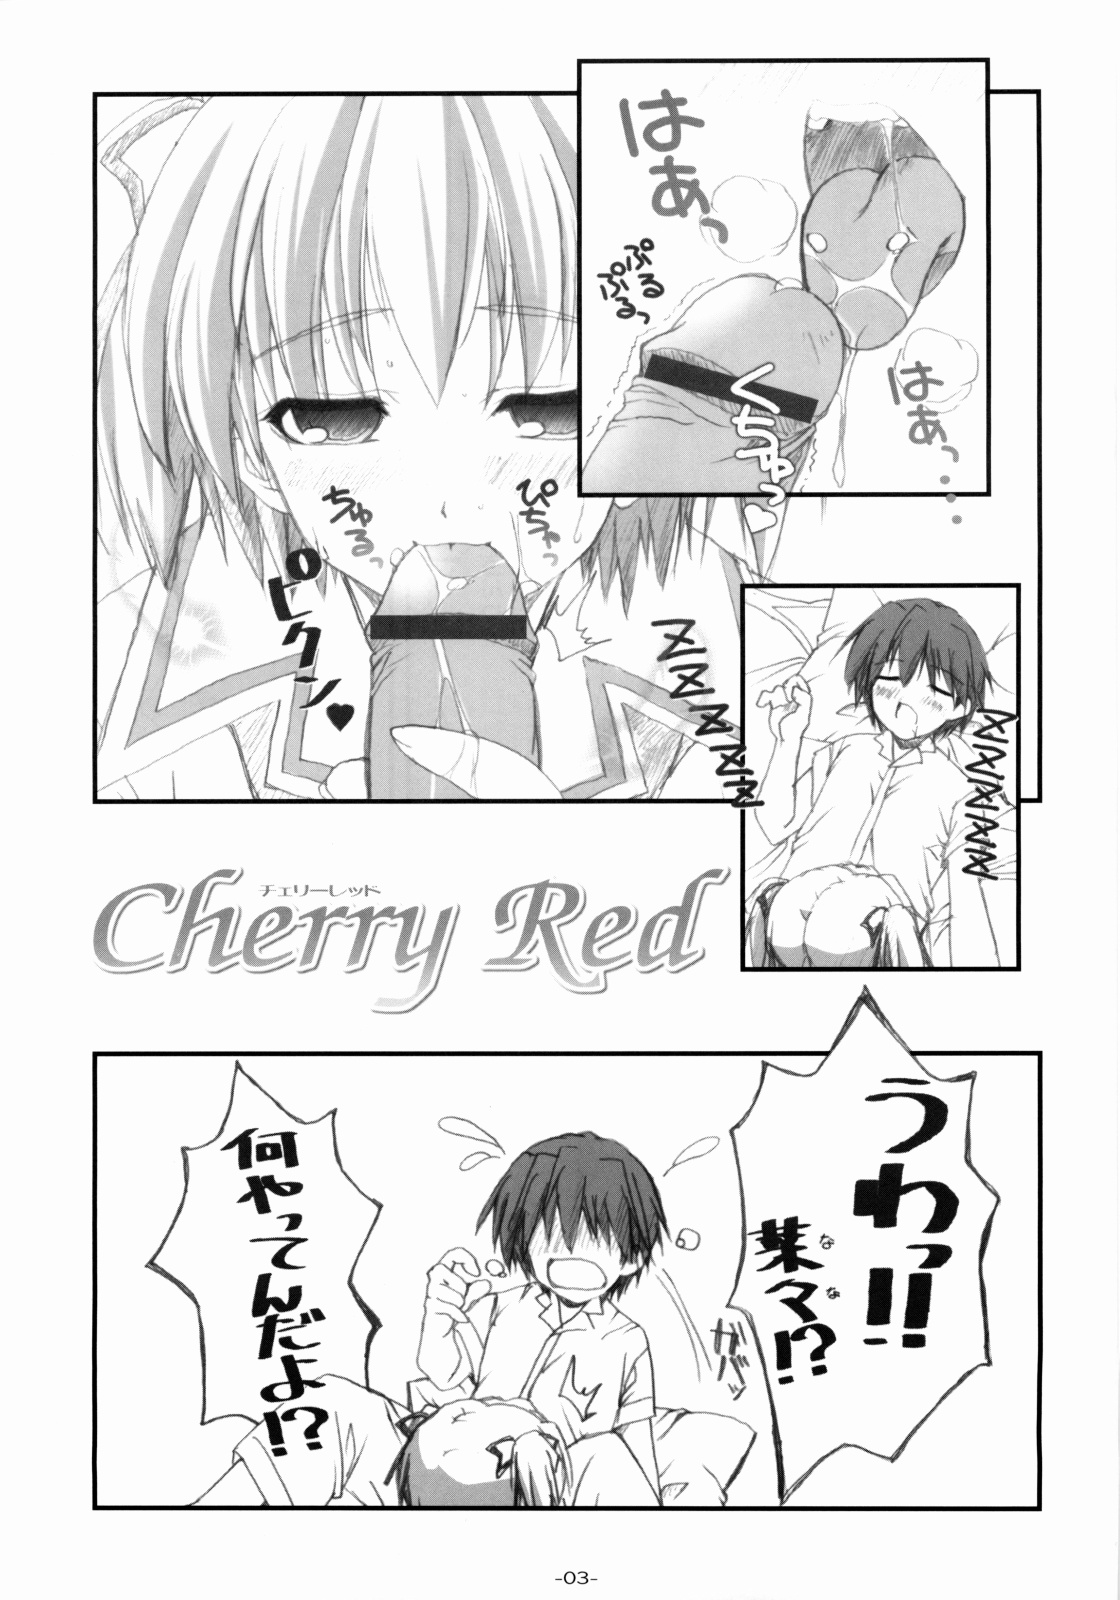 [Graphicarossa(よしむらけんたろー)] Cherry Red (キミキス)